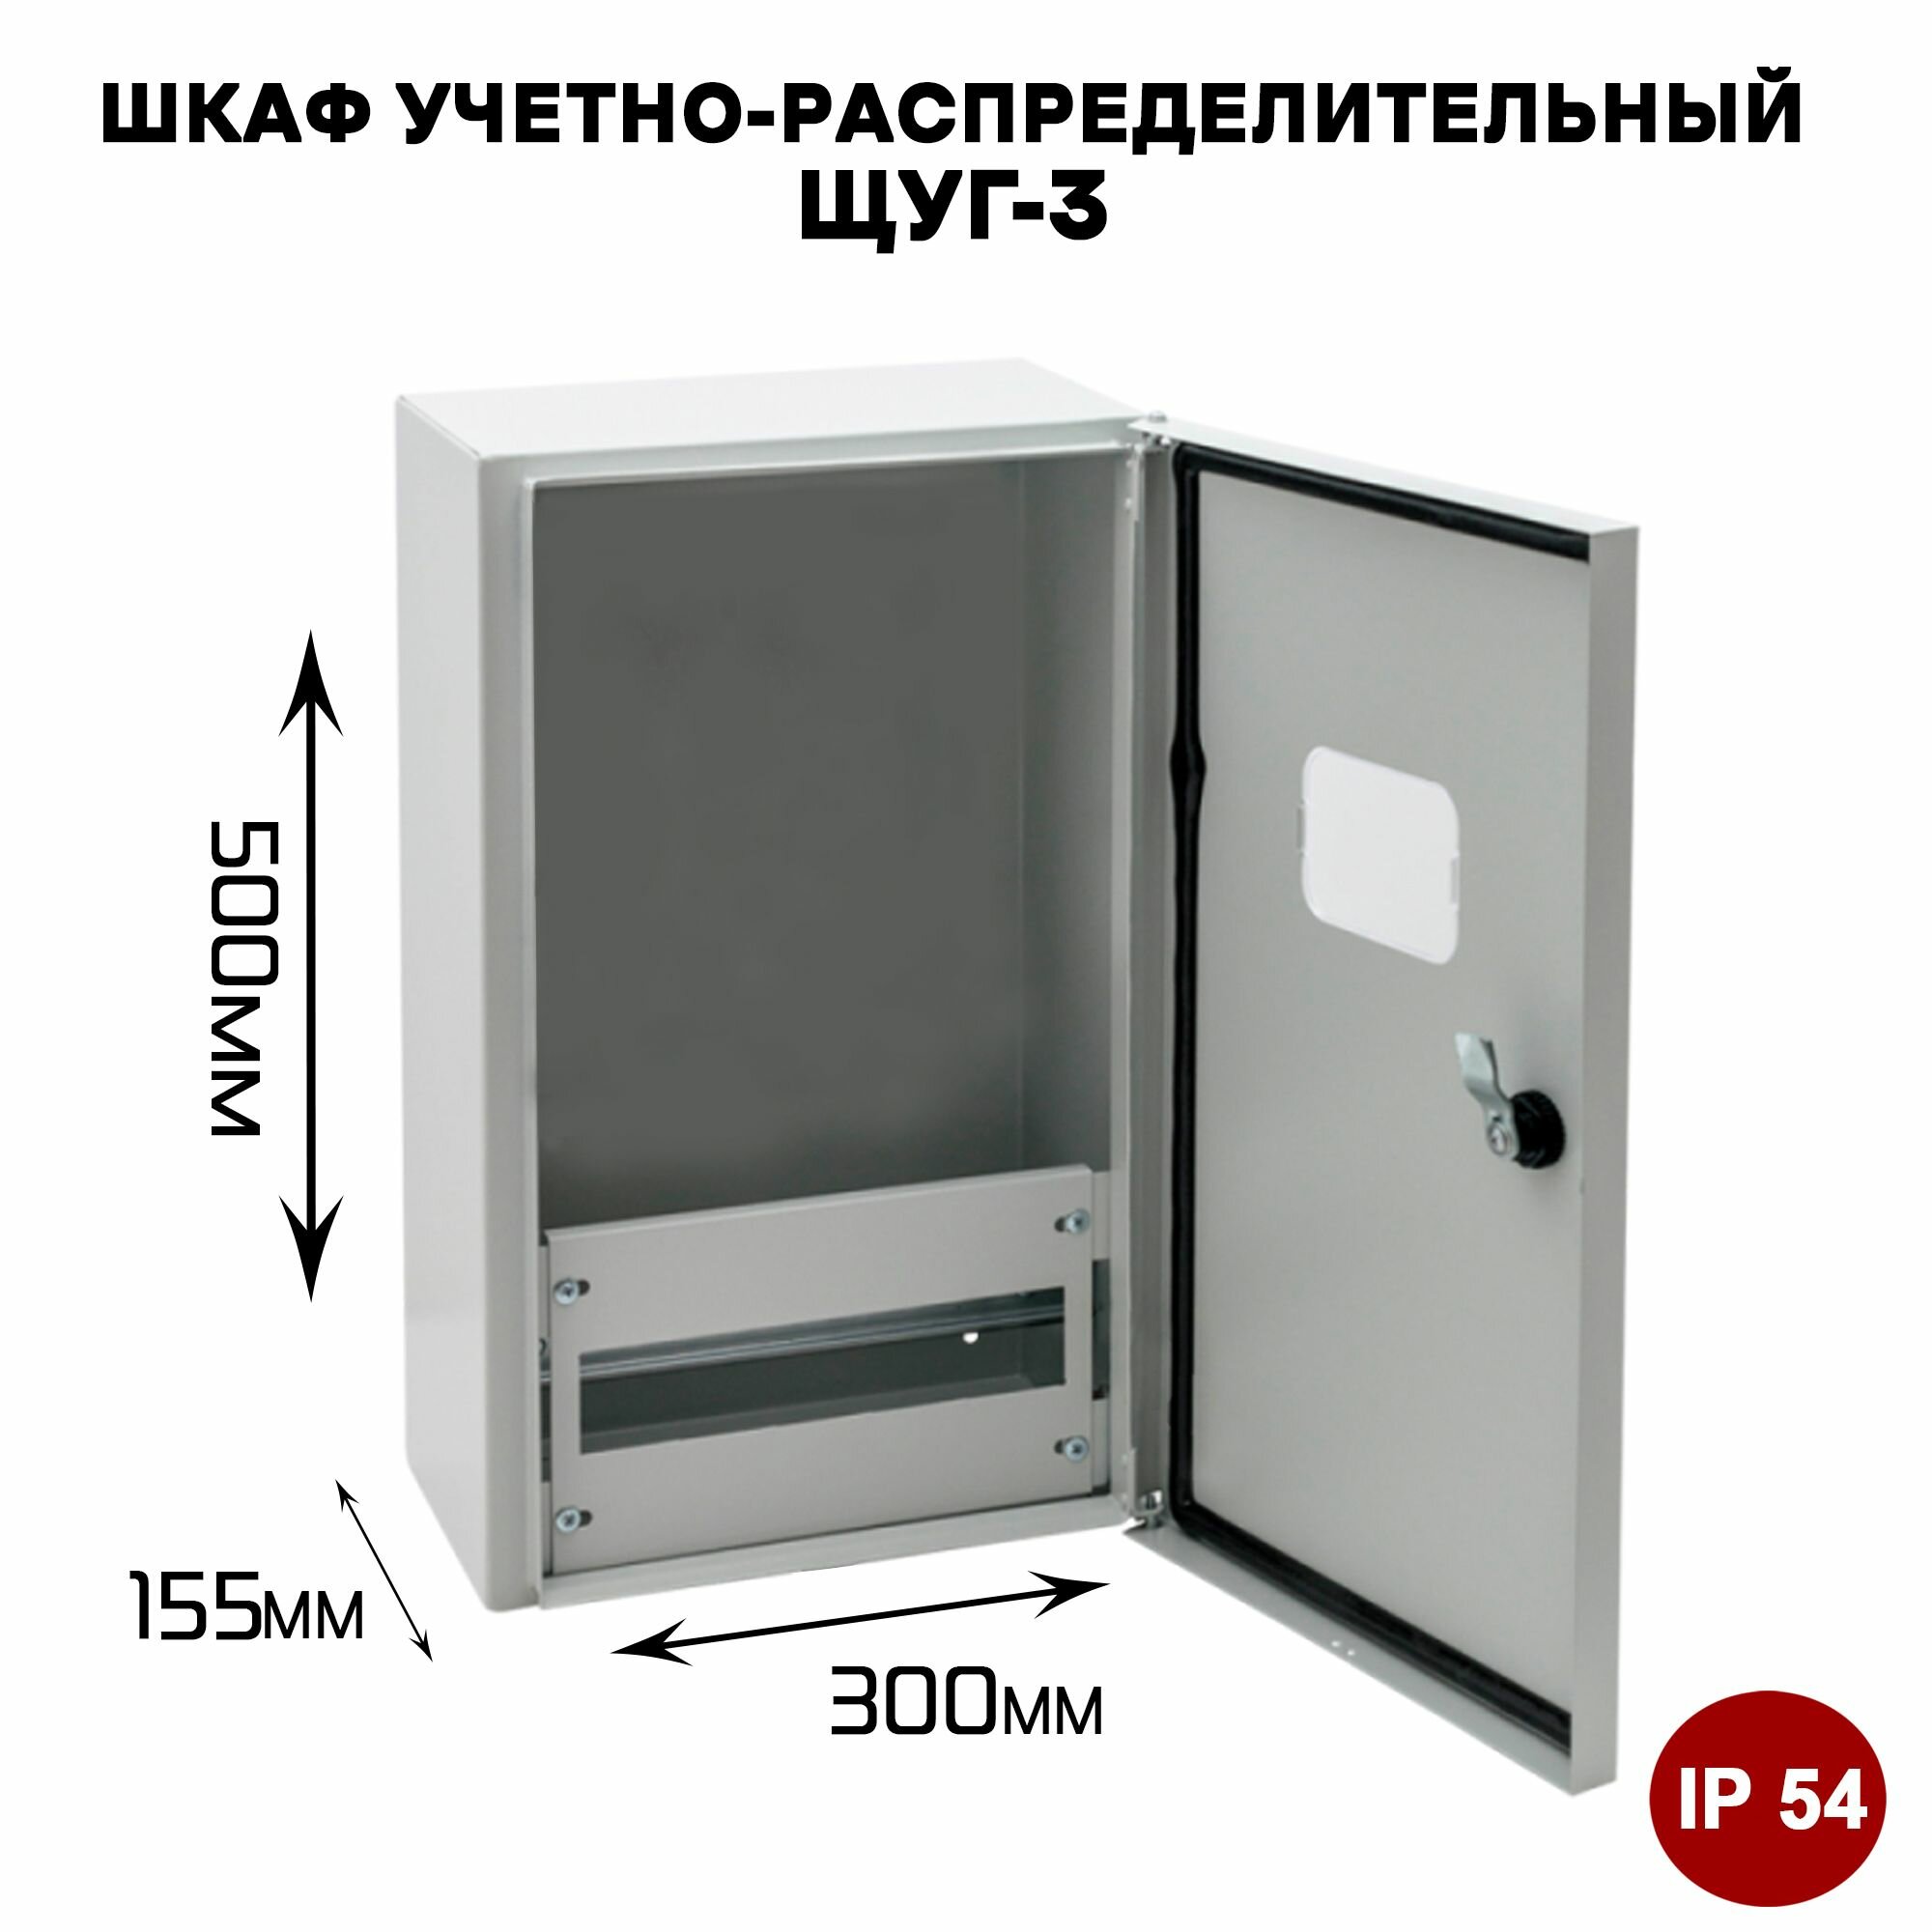 ЩУГ-3 IP54 Шкаф учетно-распределительный уличного исполнения (500x300x155 мм)